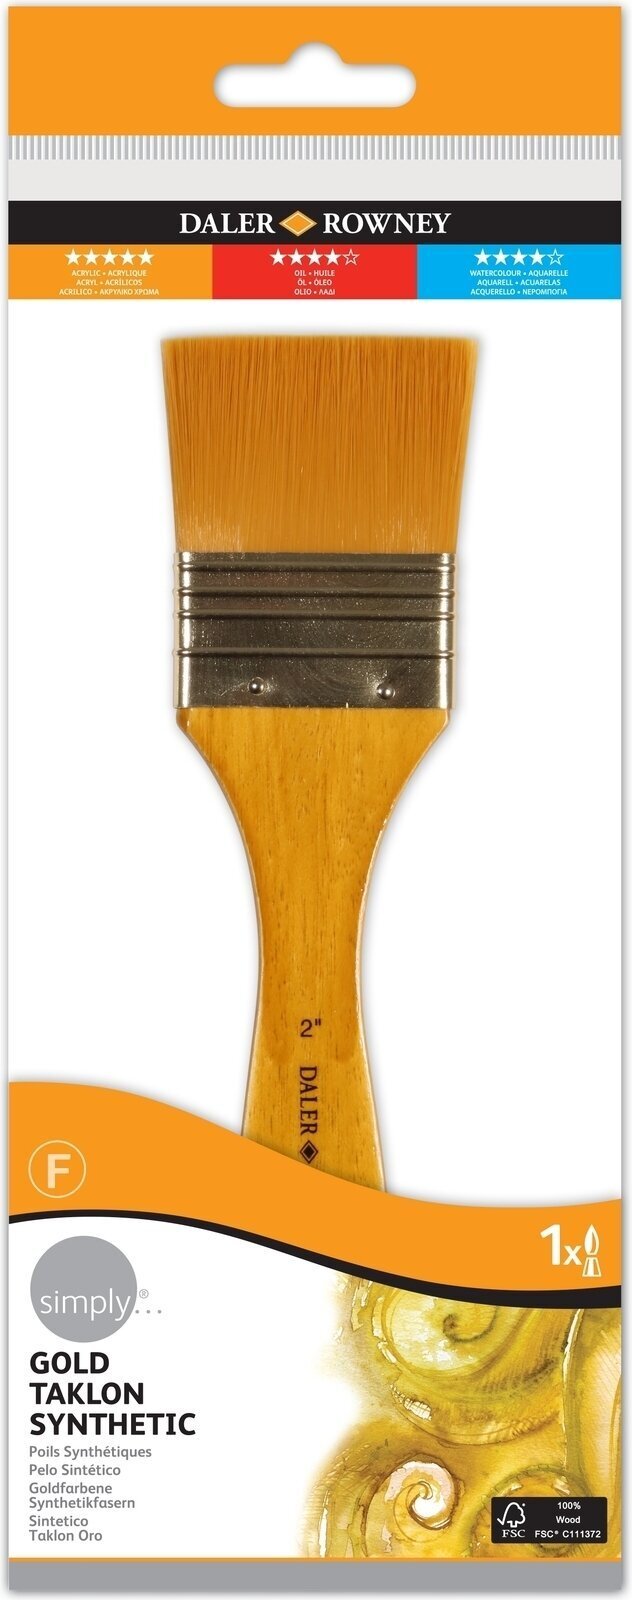 Pennello Daler Rowney Simply Acrylic Brush Gold Taklon Synthetic Pennello piatto 2 1 pz